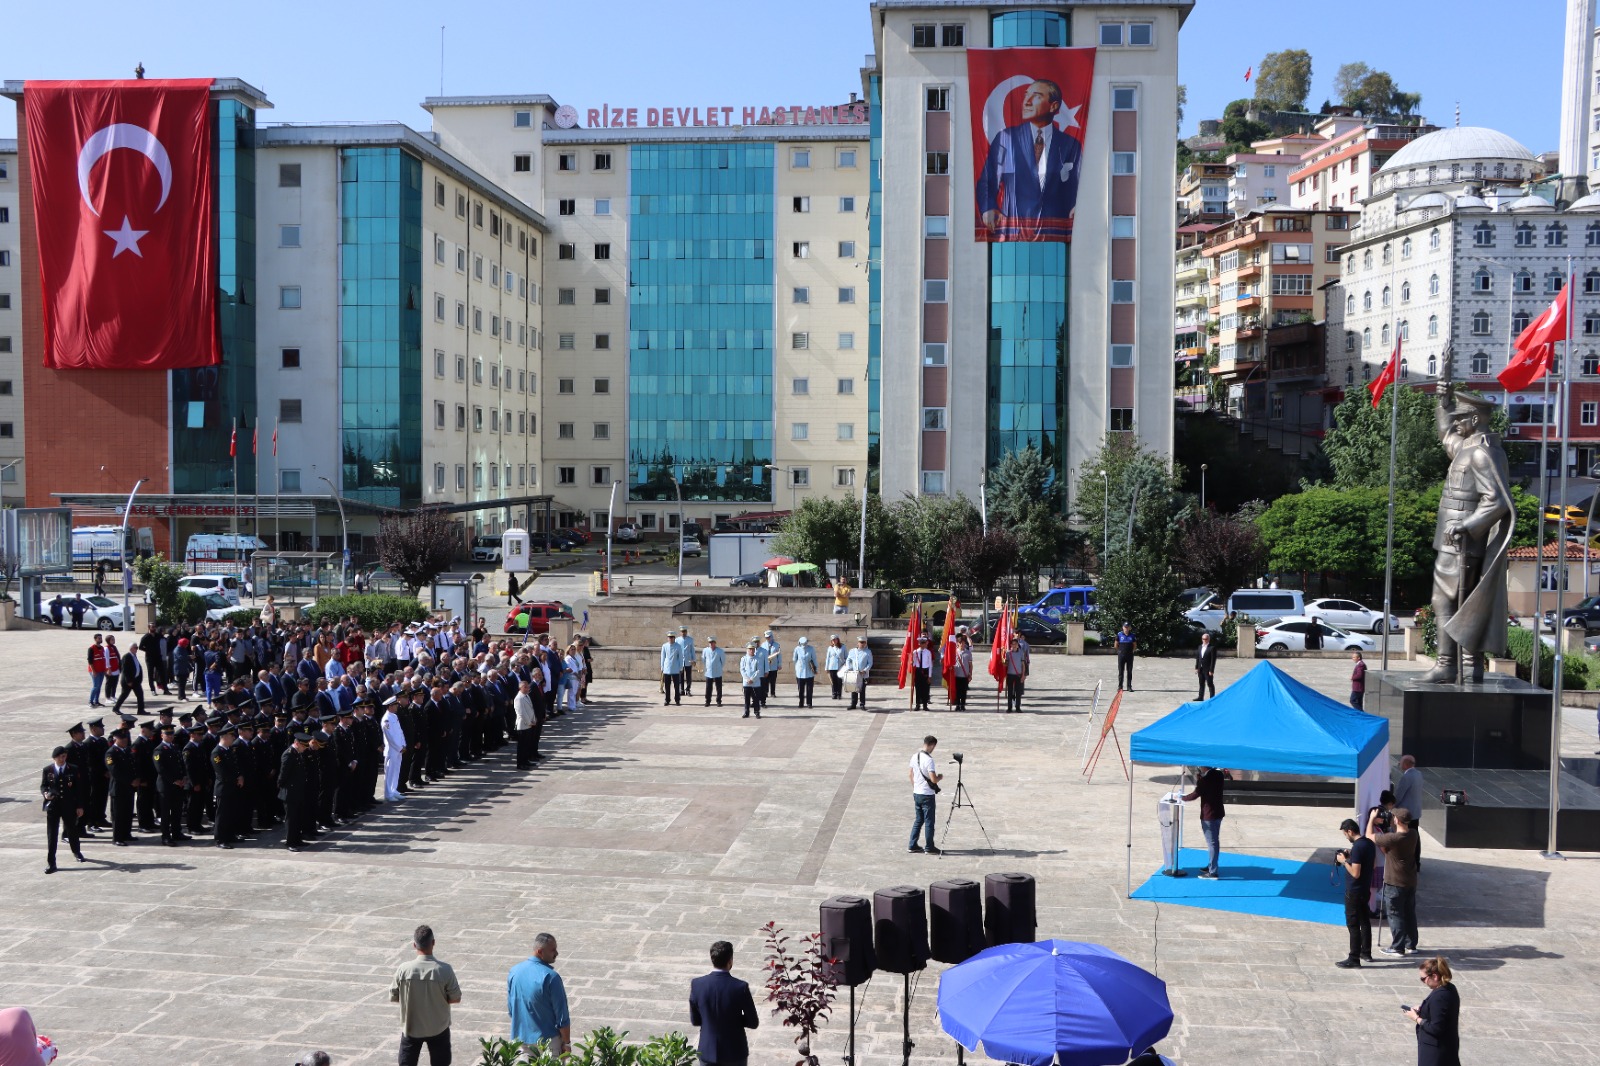 Gazi Mustafa Kemal Atatürk’ün Rize’ye Gelişinin 98. Yılı Törenlerle Kutlandı…